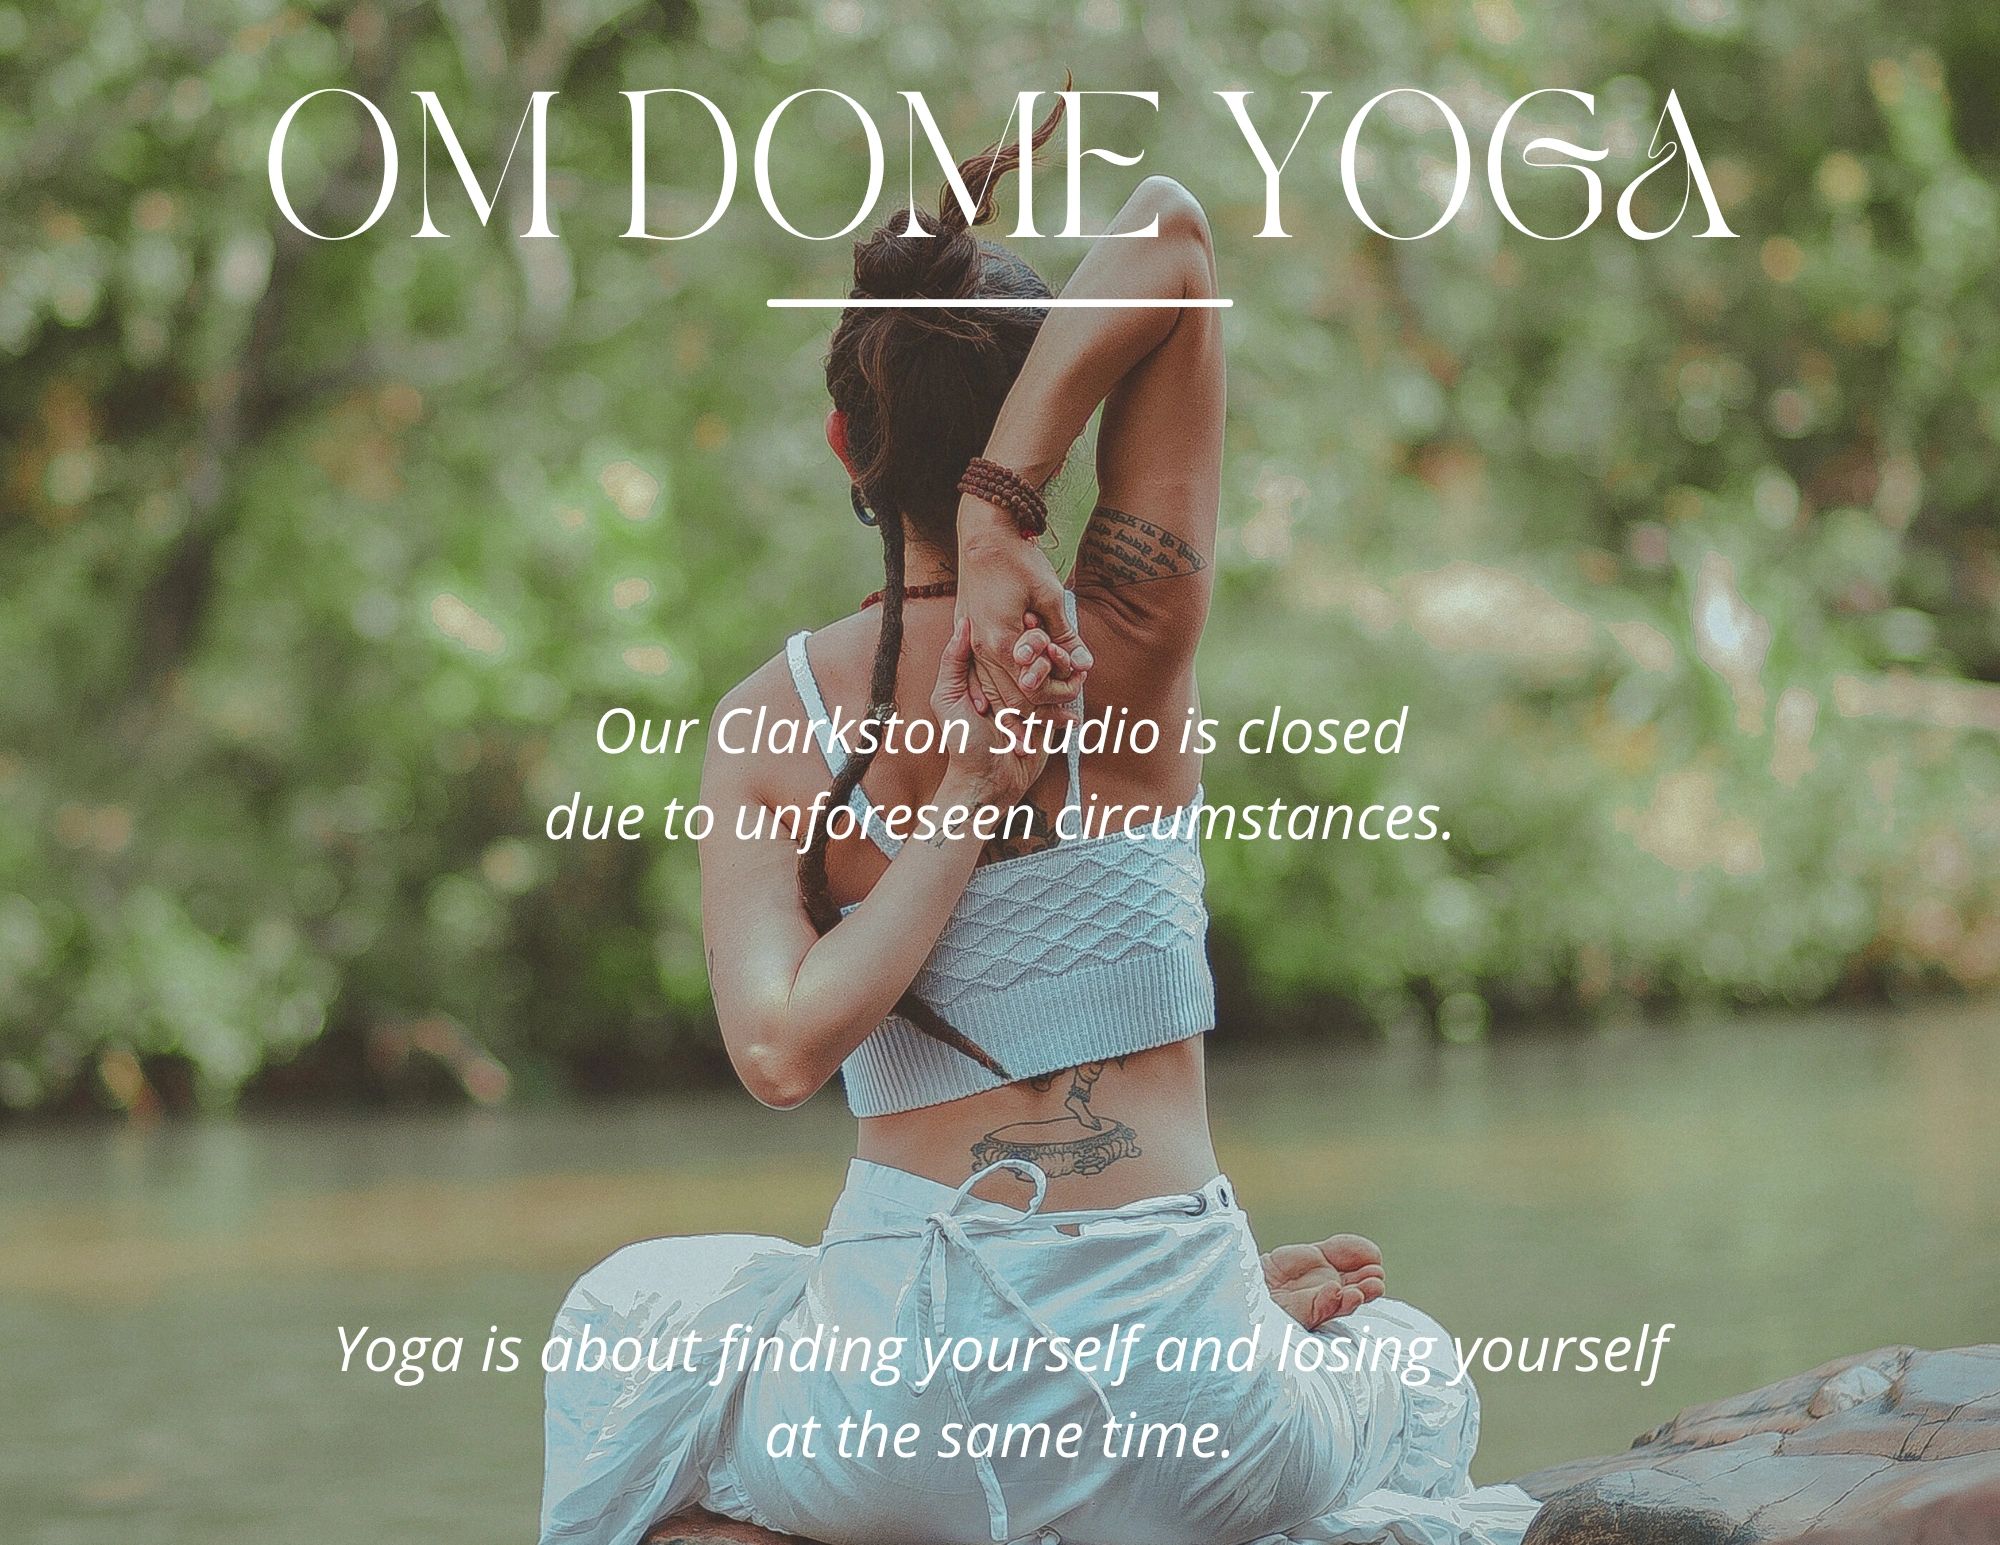 OmBodies Yoga Mount Pleasant, MI